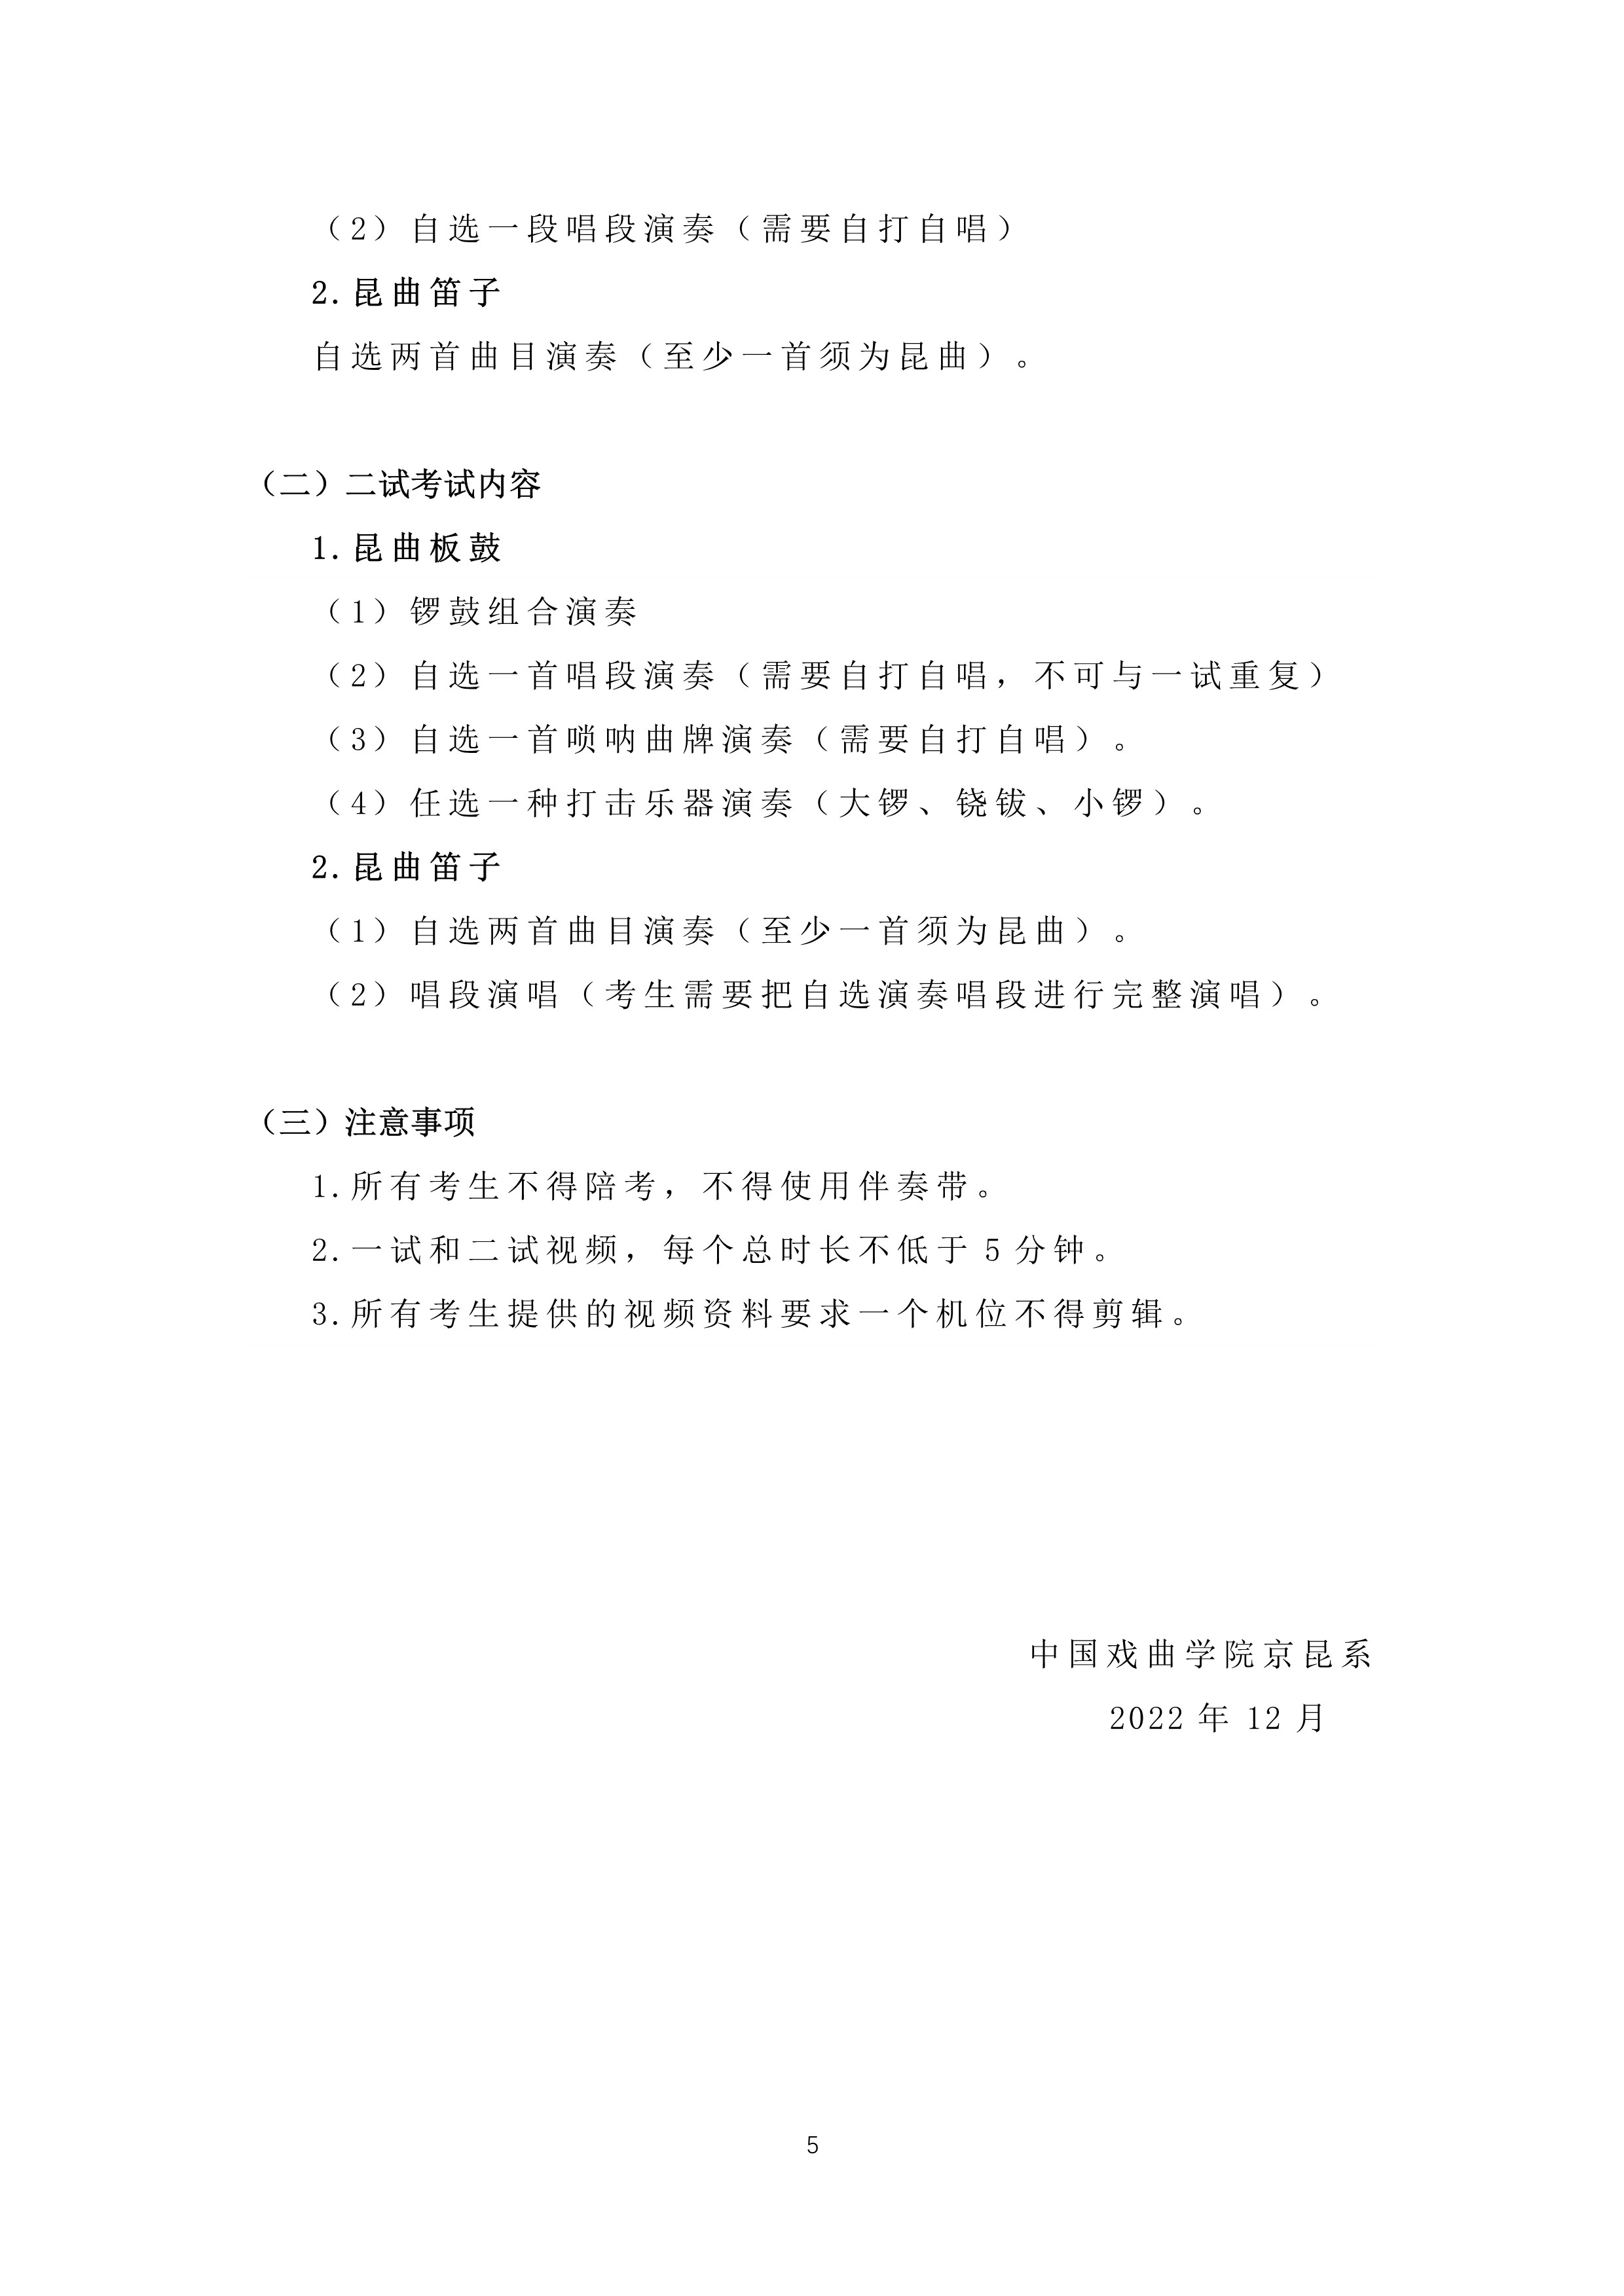 中国戏曲学院2023年本科招生京昆系专业考试内容与要求_5.jpg